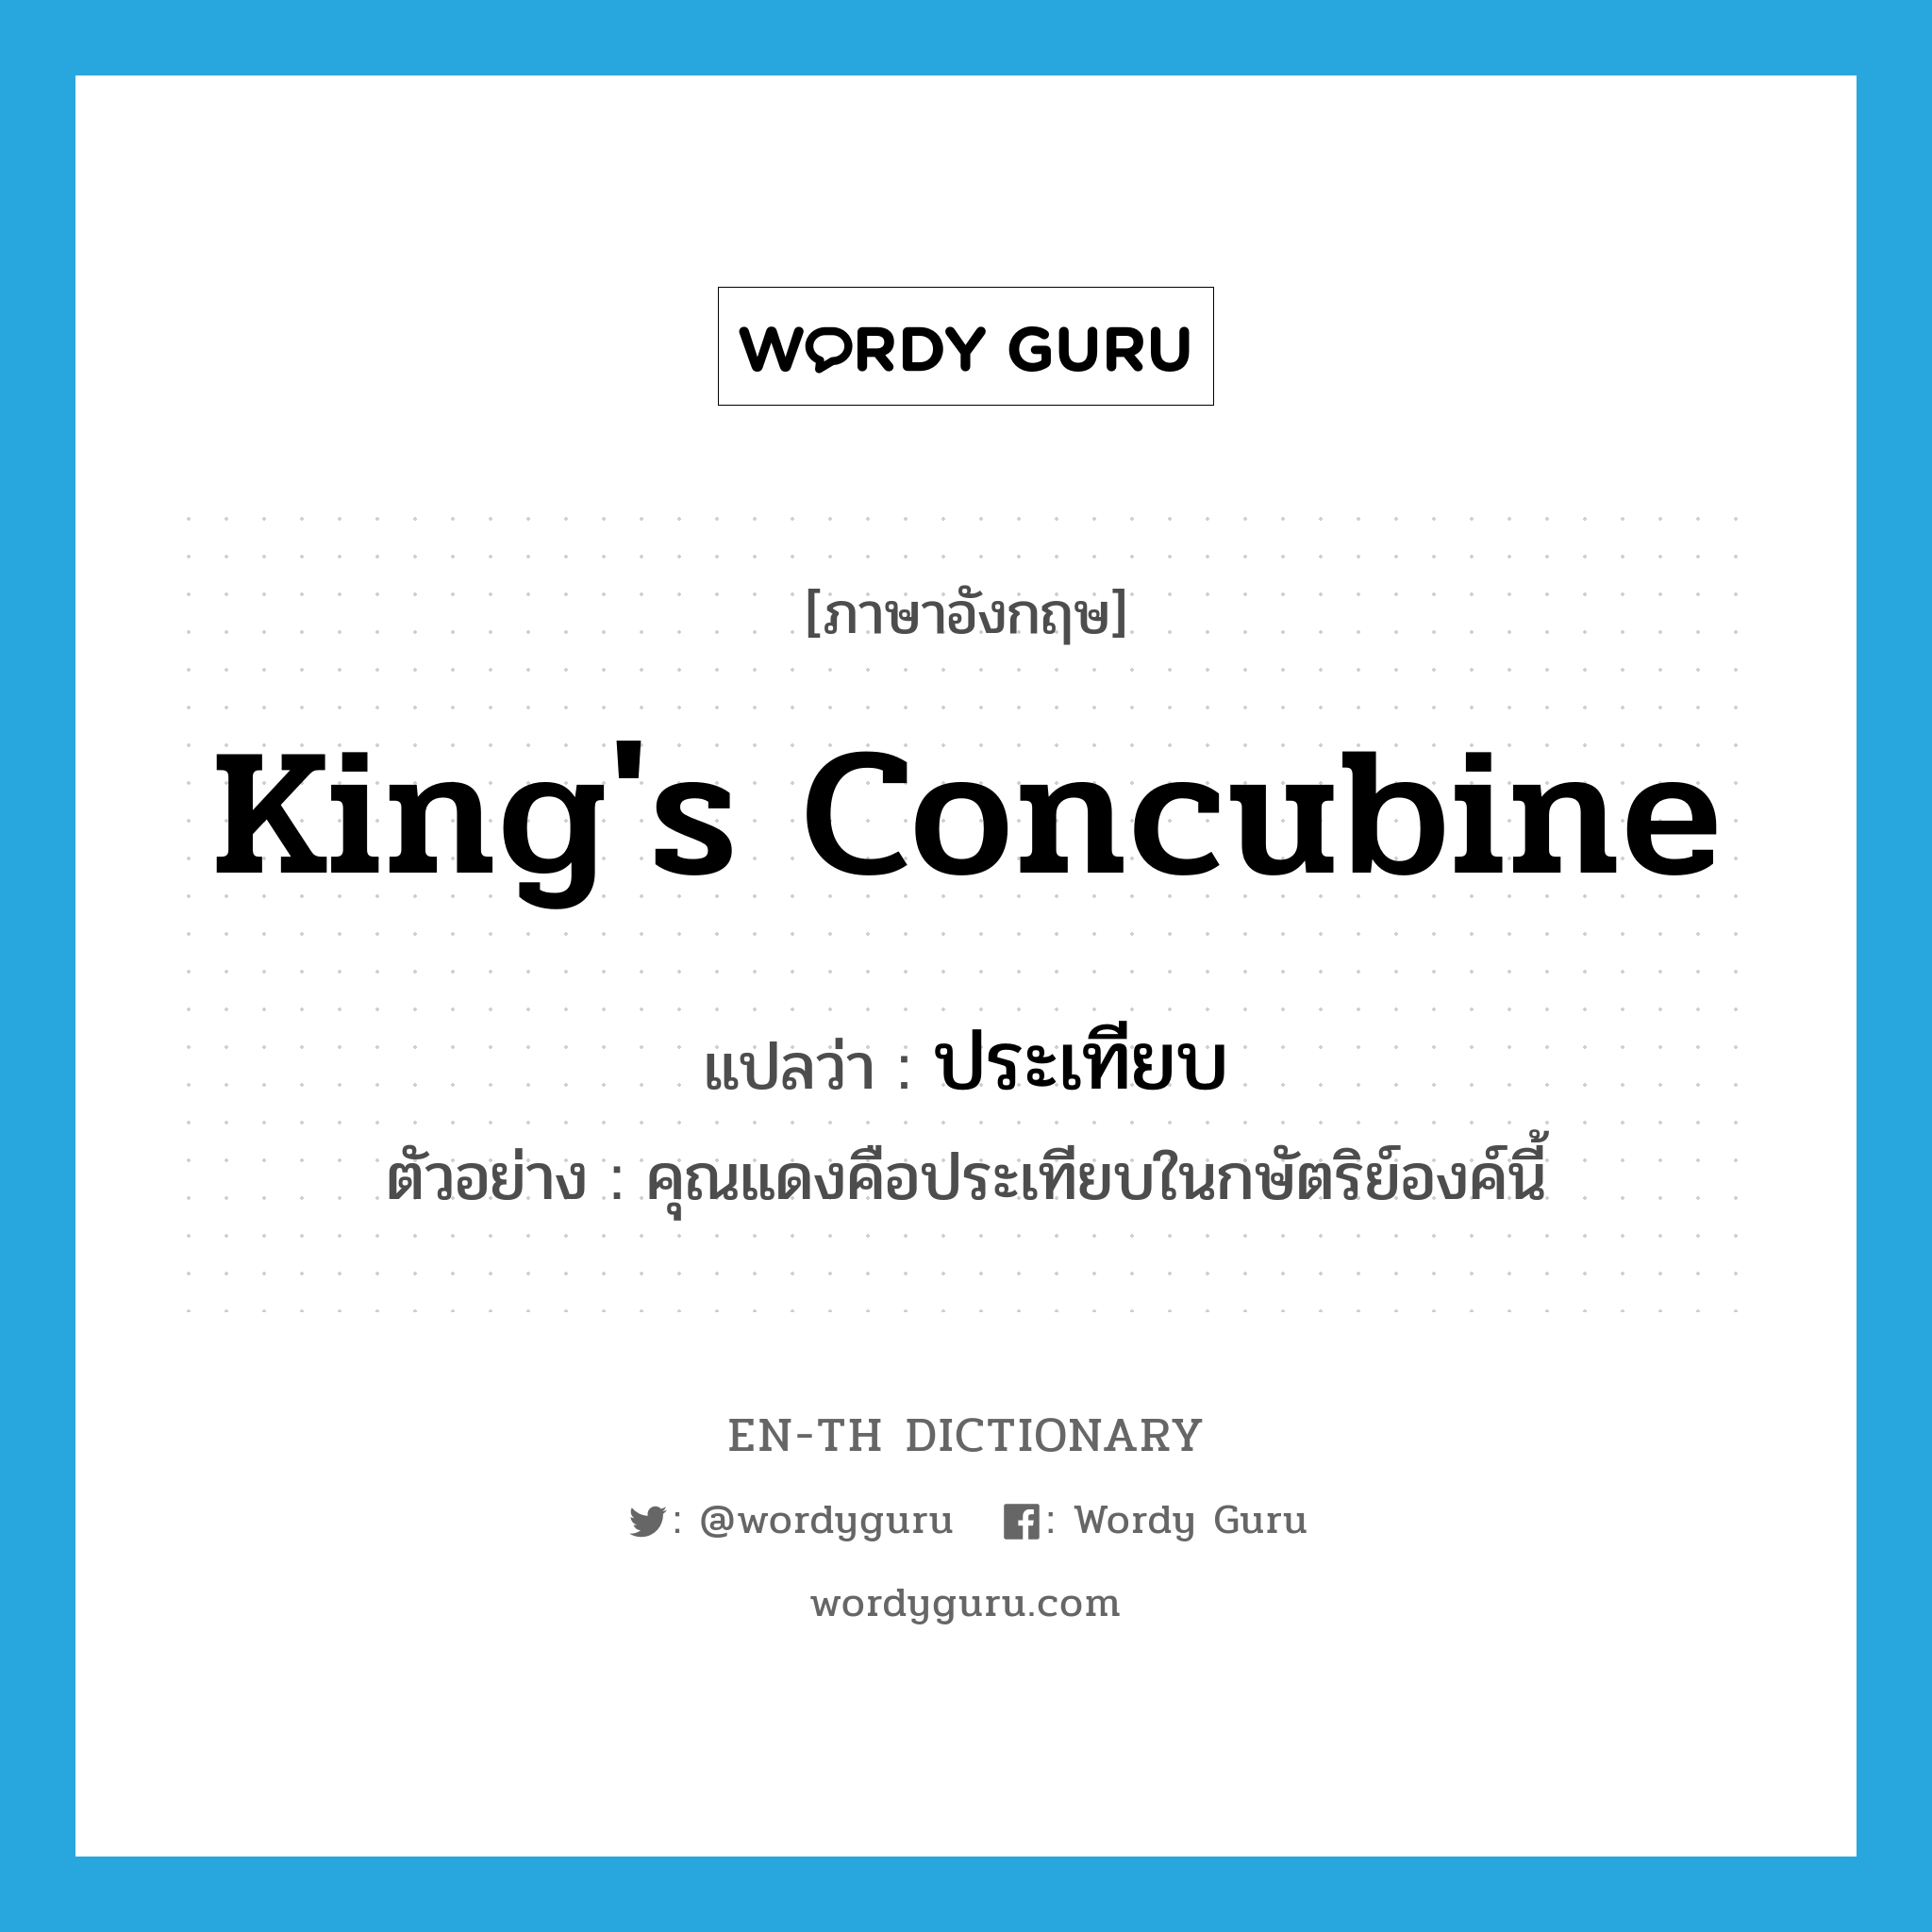 king's concubine แปลว่า?, คำศัพท์ภาษาอังกฤษ king's concubine แปลว่า ประเทียบ ประเภท N ตัวอย่าง คุณแดงคือประเทียบในกษัตริย์องค์นี้ หมวด N